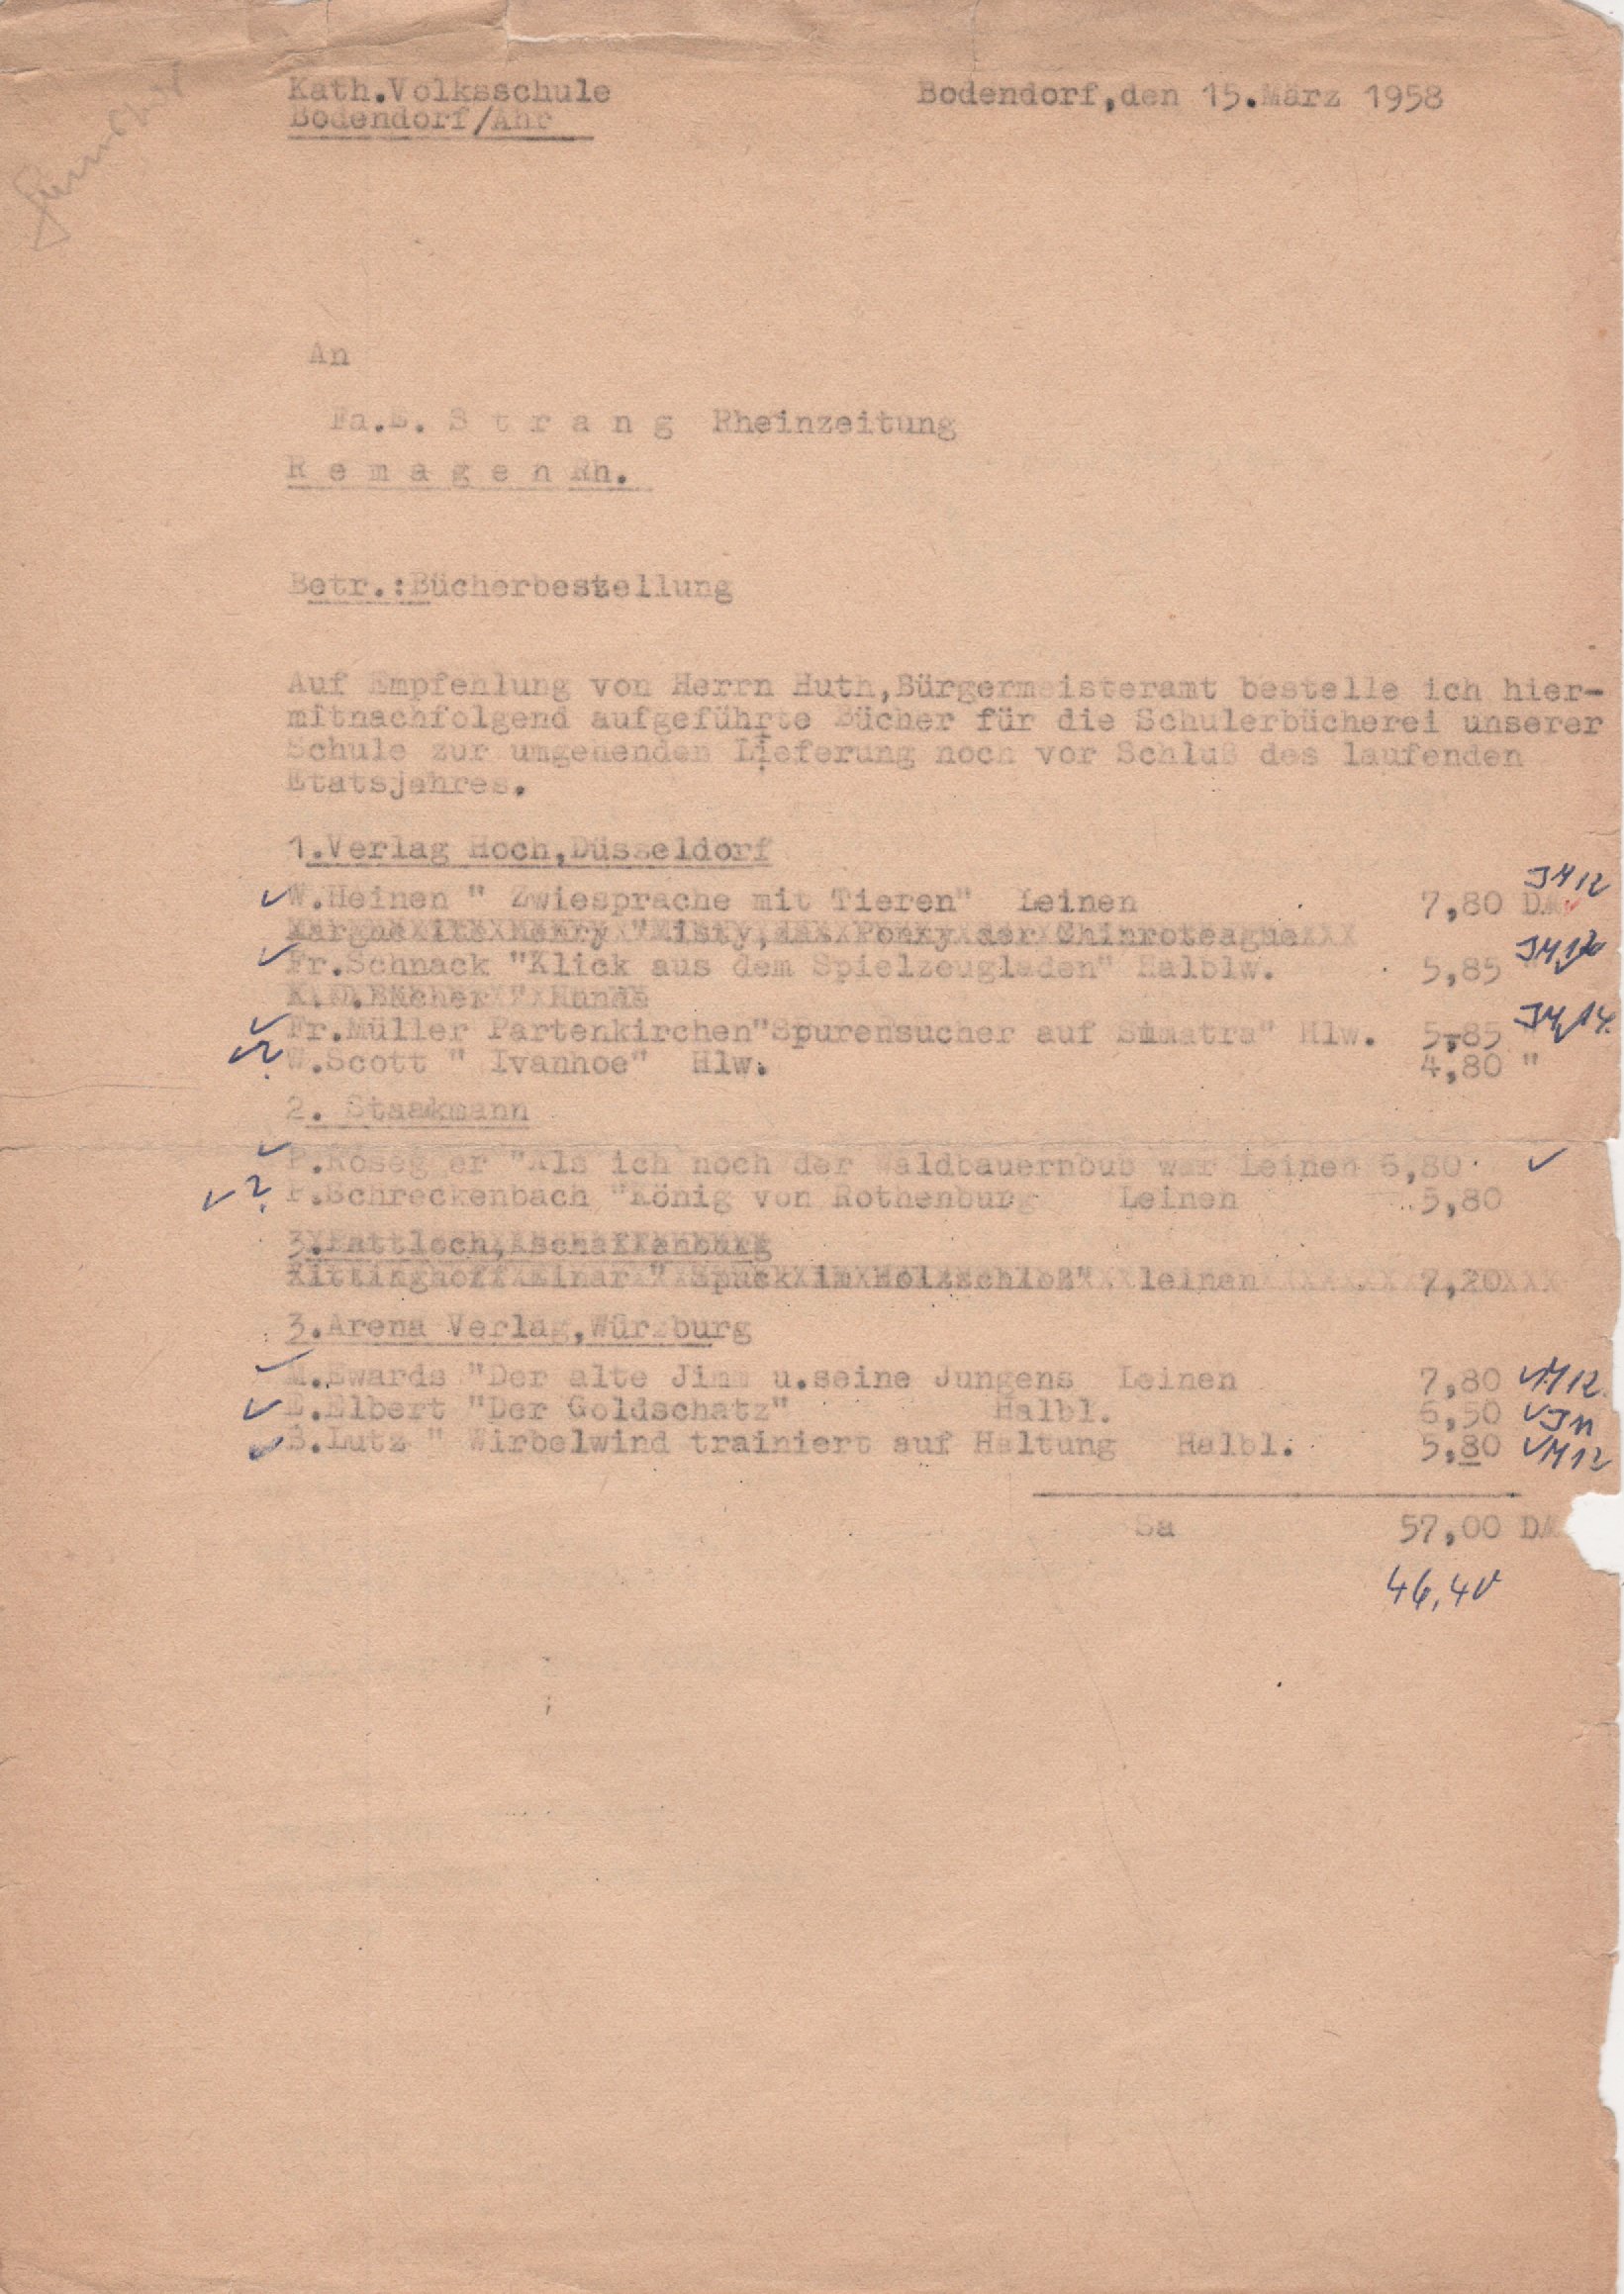 Bücherbestellung von der Kath. Volksschule Bodendorf vom 15. März 1958 (Heimatarchiv Bad Bodendorf CC BY-NC-SA)